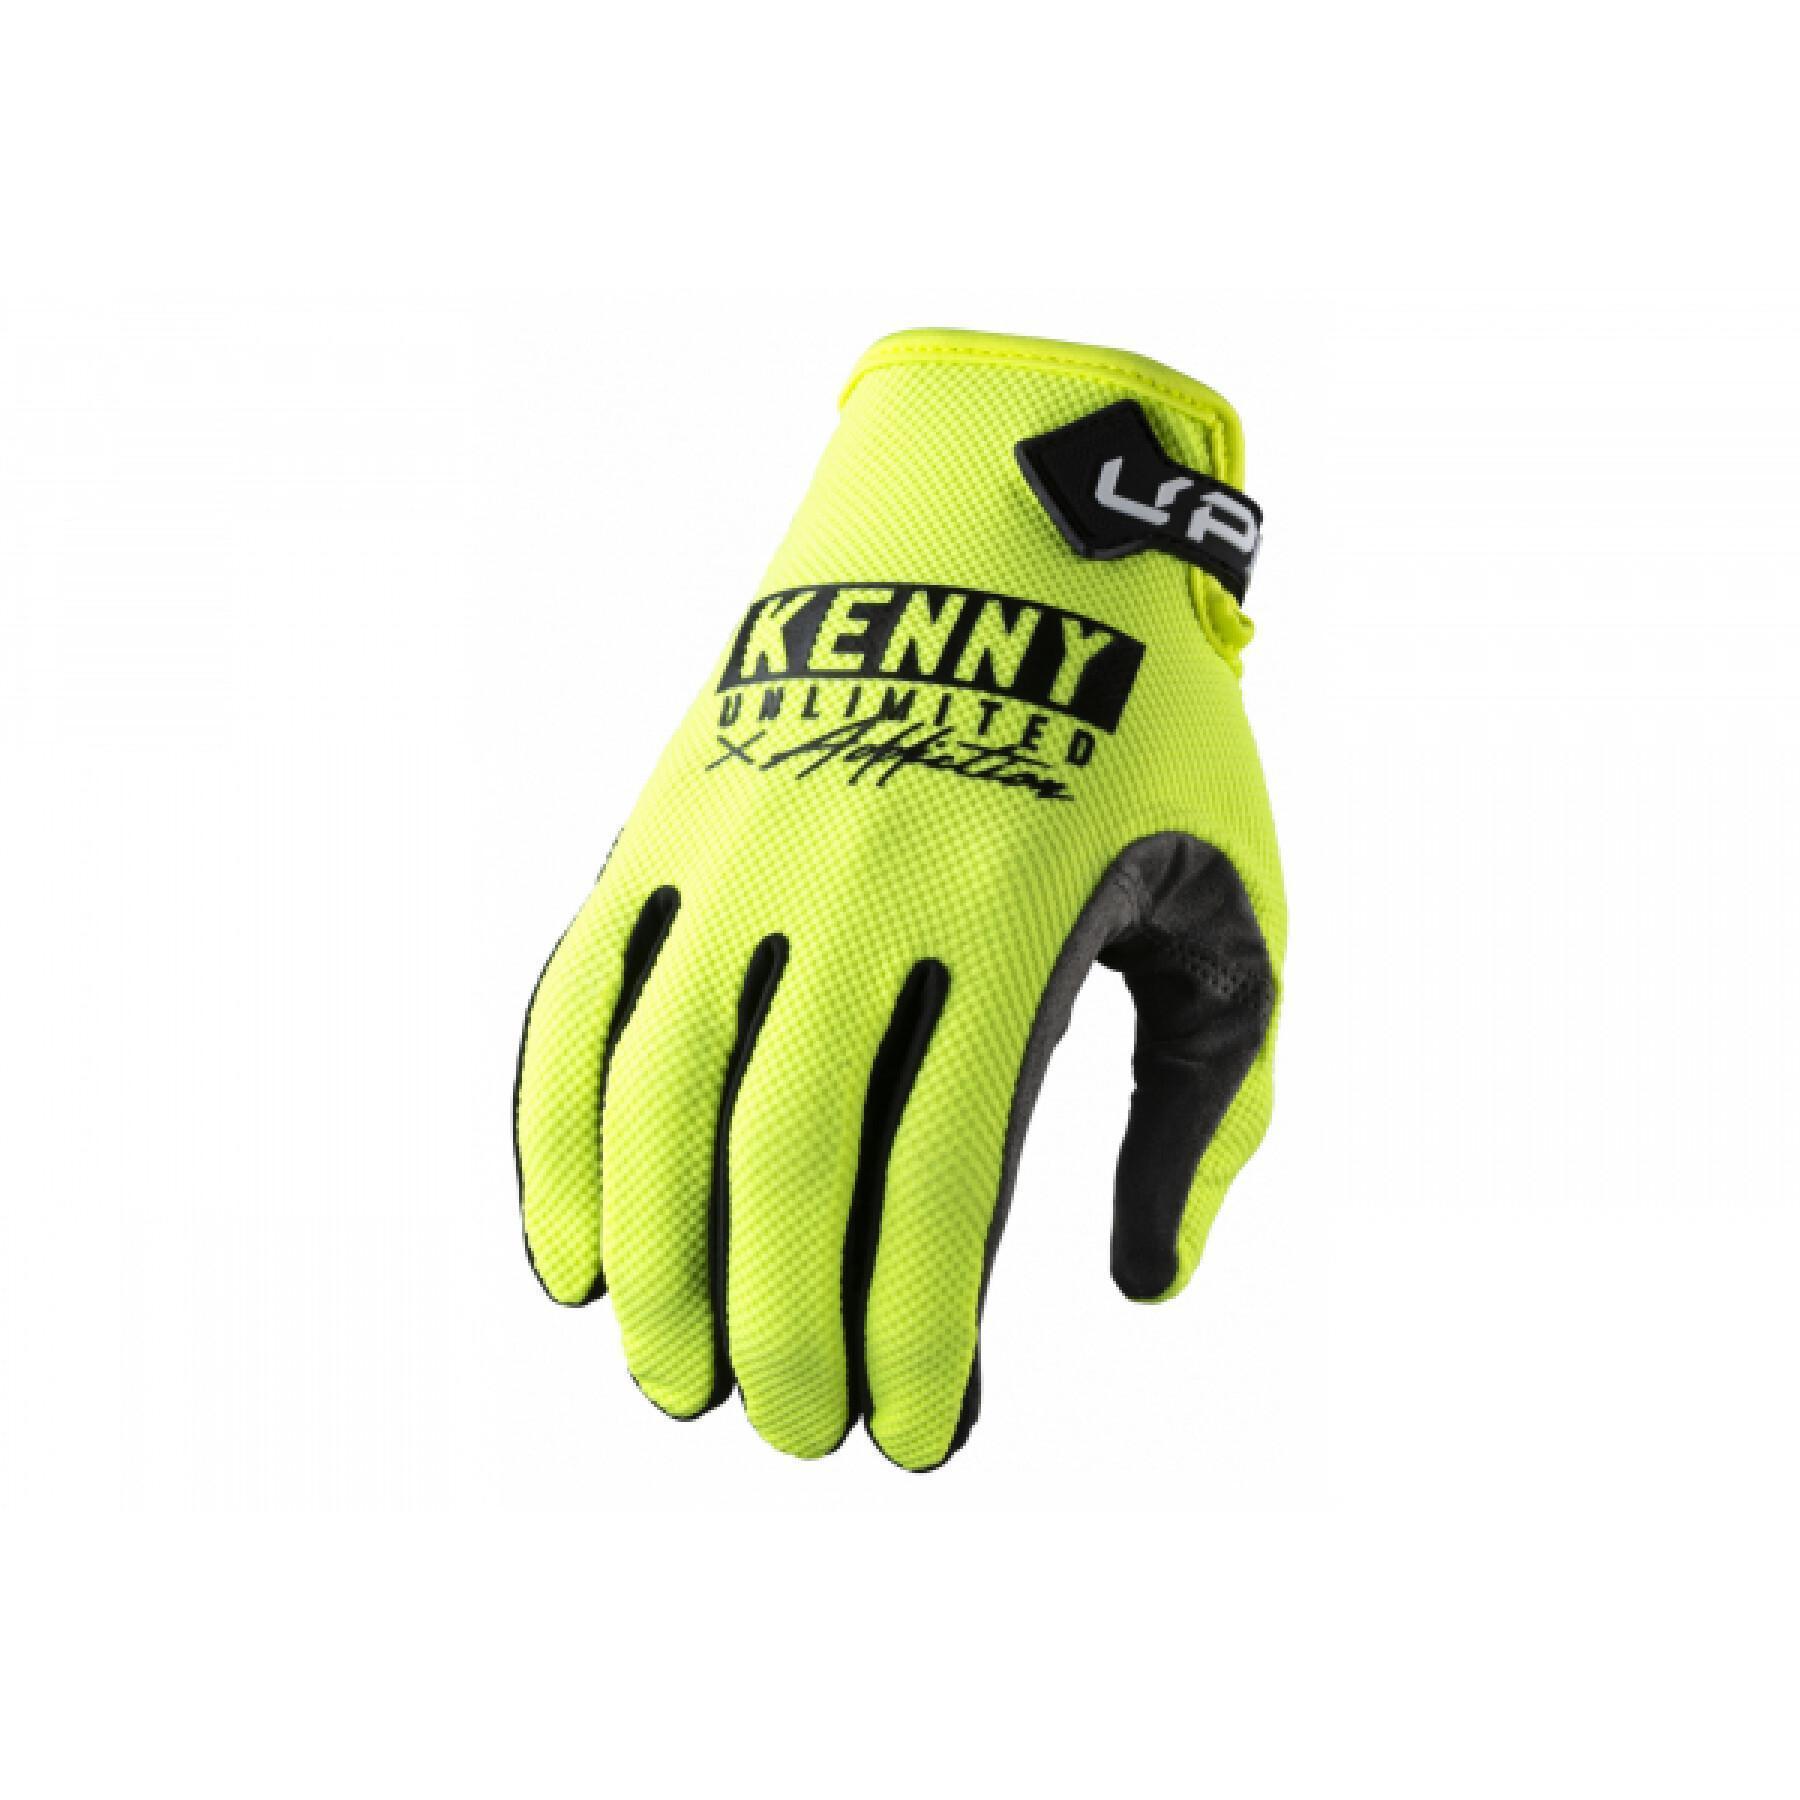 Motocross-handskar Kenny up